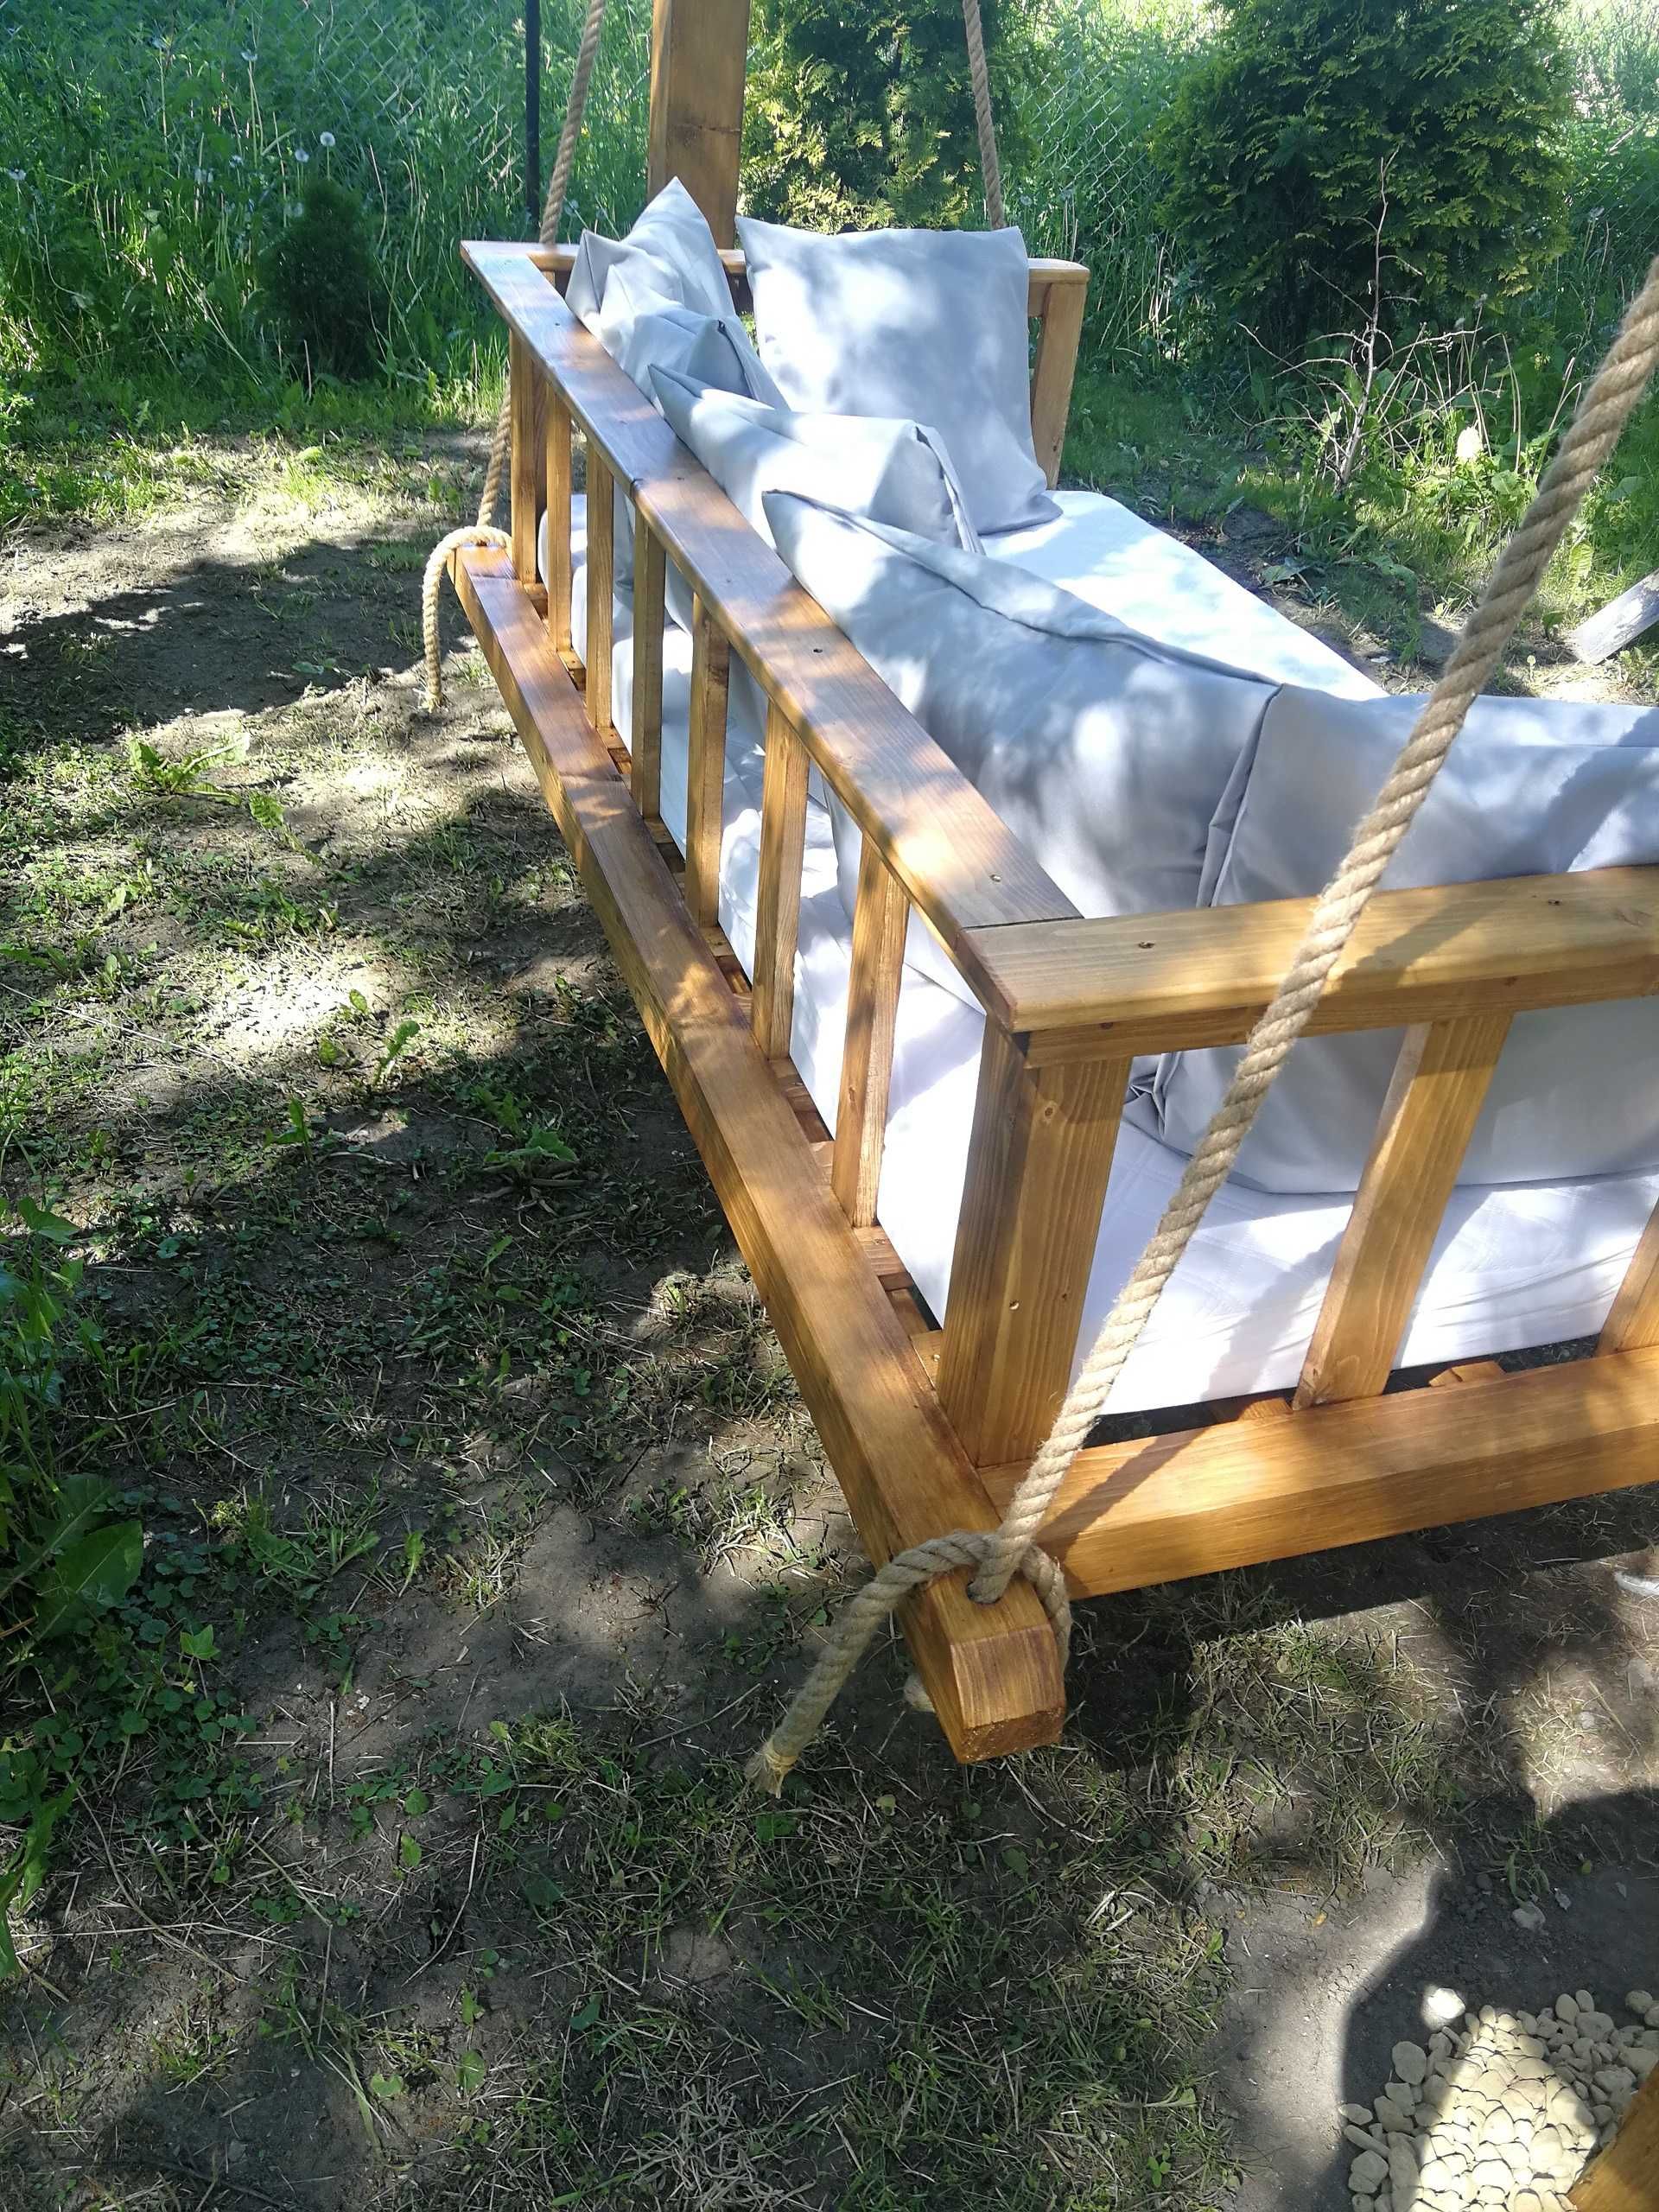 Huśtawka ogrodowa, łóżko ogrodowe, bujanka do altanki.